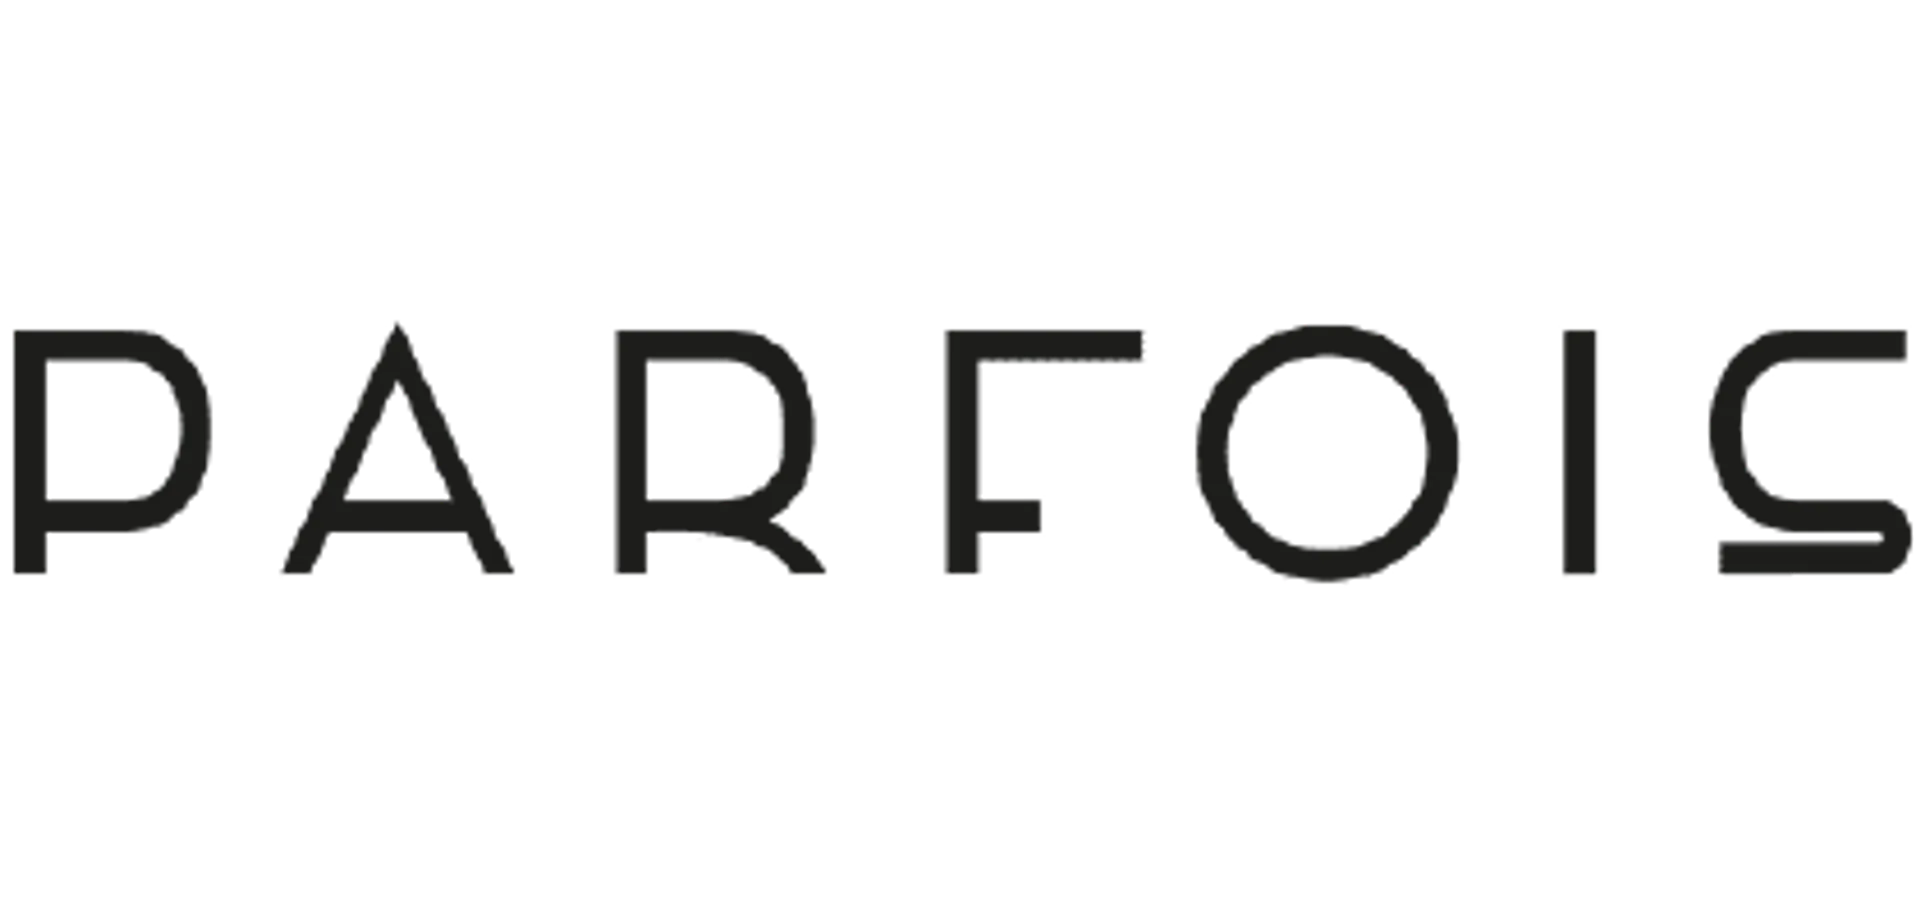 PARFOIS logo